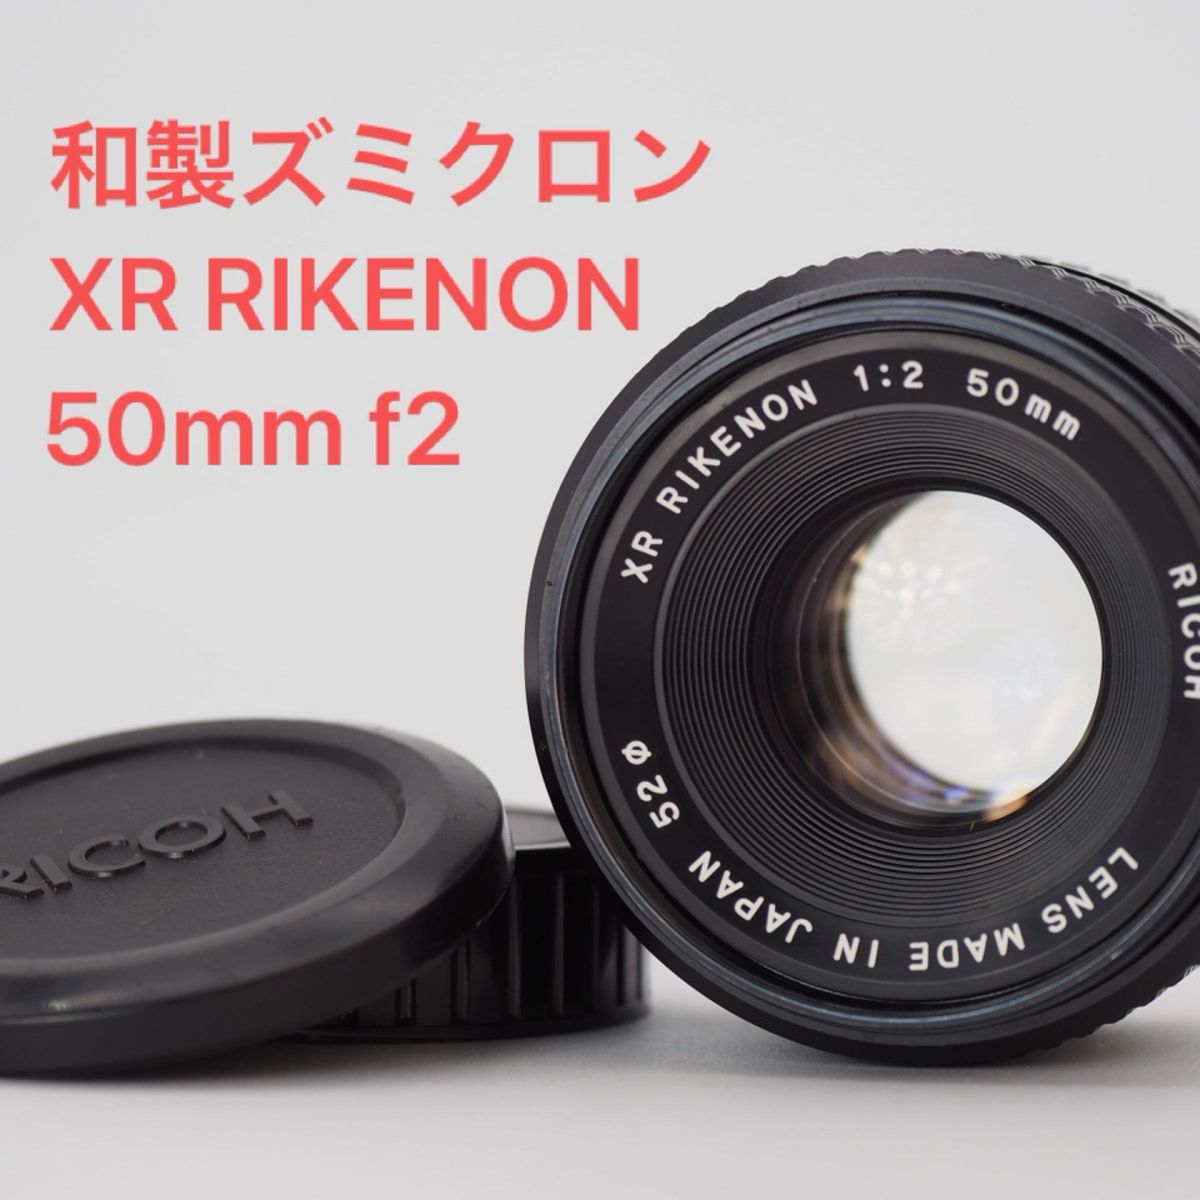 RICOH リコー XR RIKENON 50mm f2 和製ズミクロン オールドレンズ